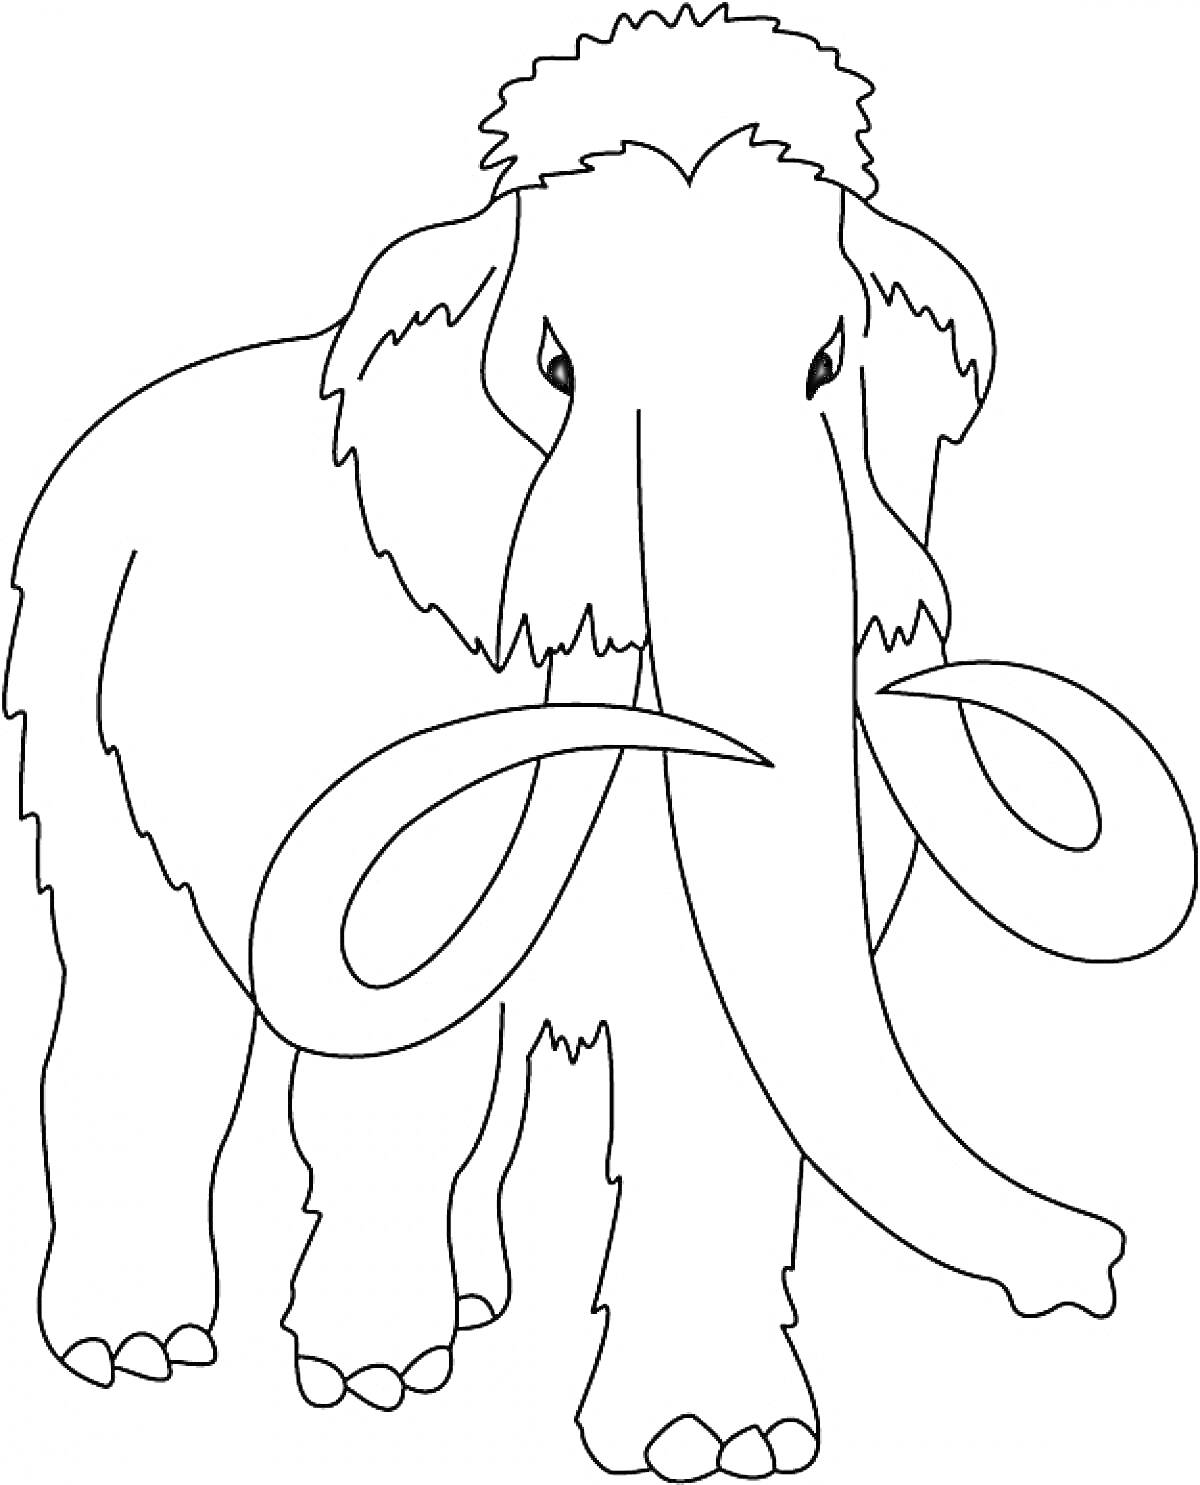 Раскраска Раскраска с изображением мамонта